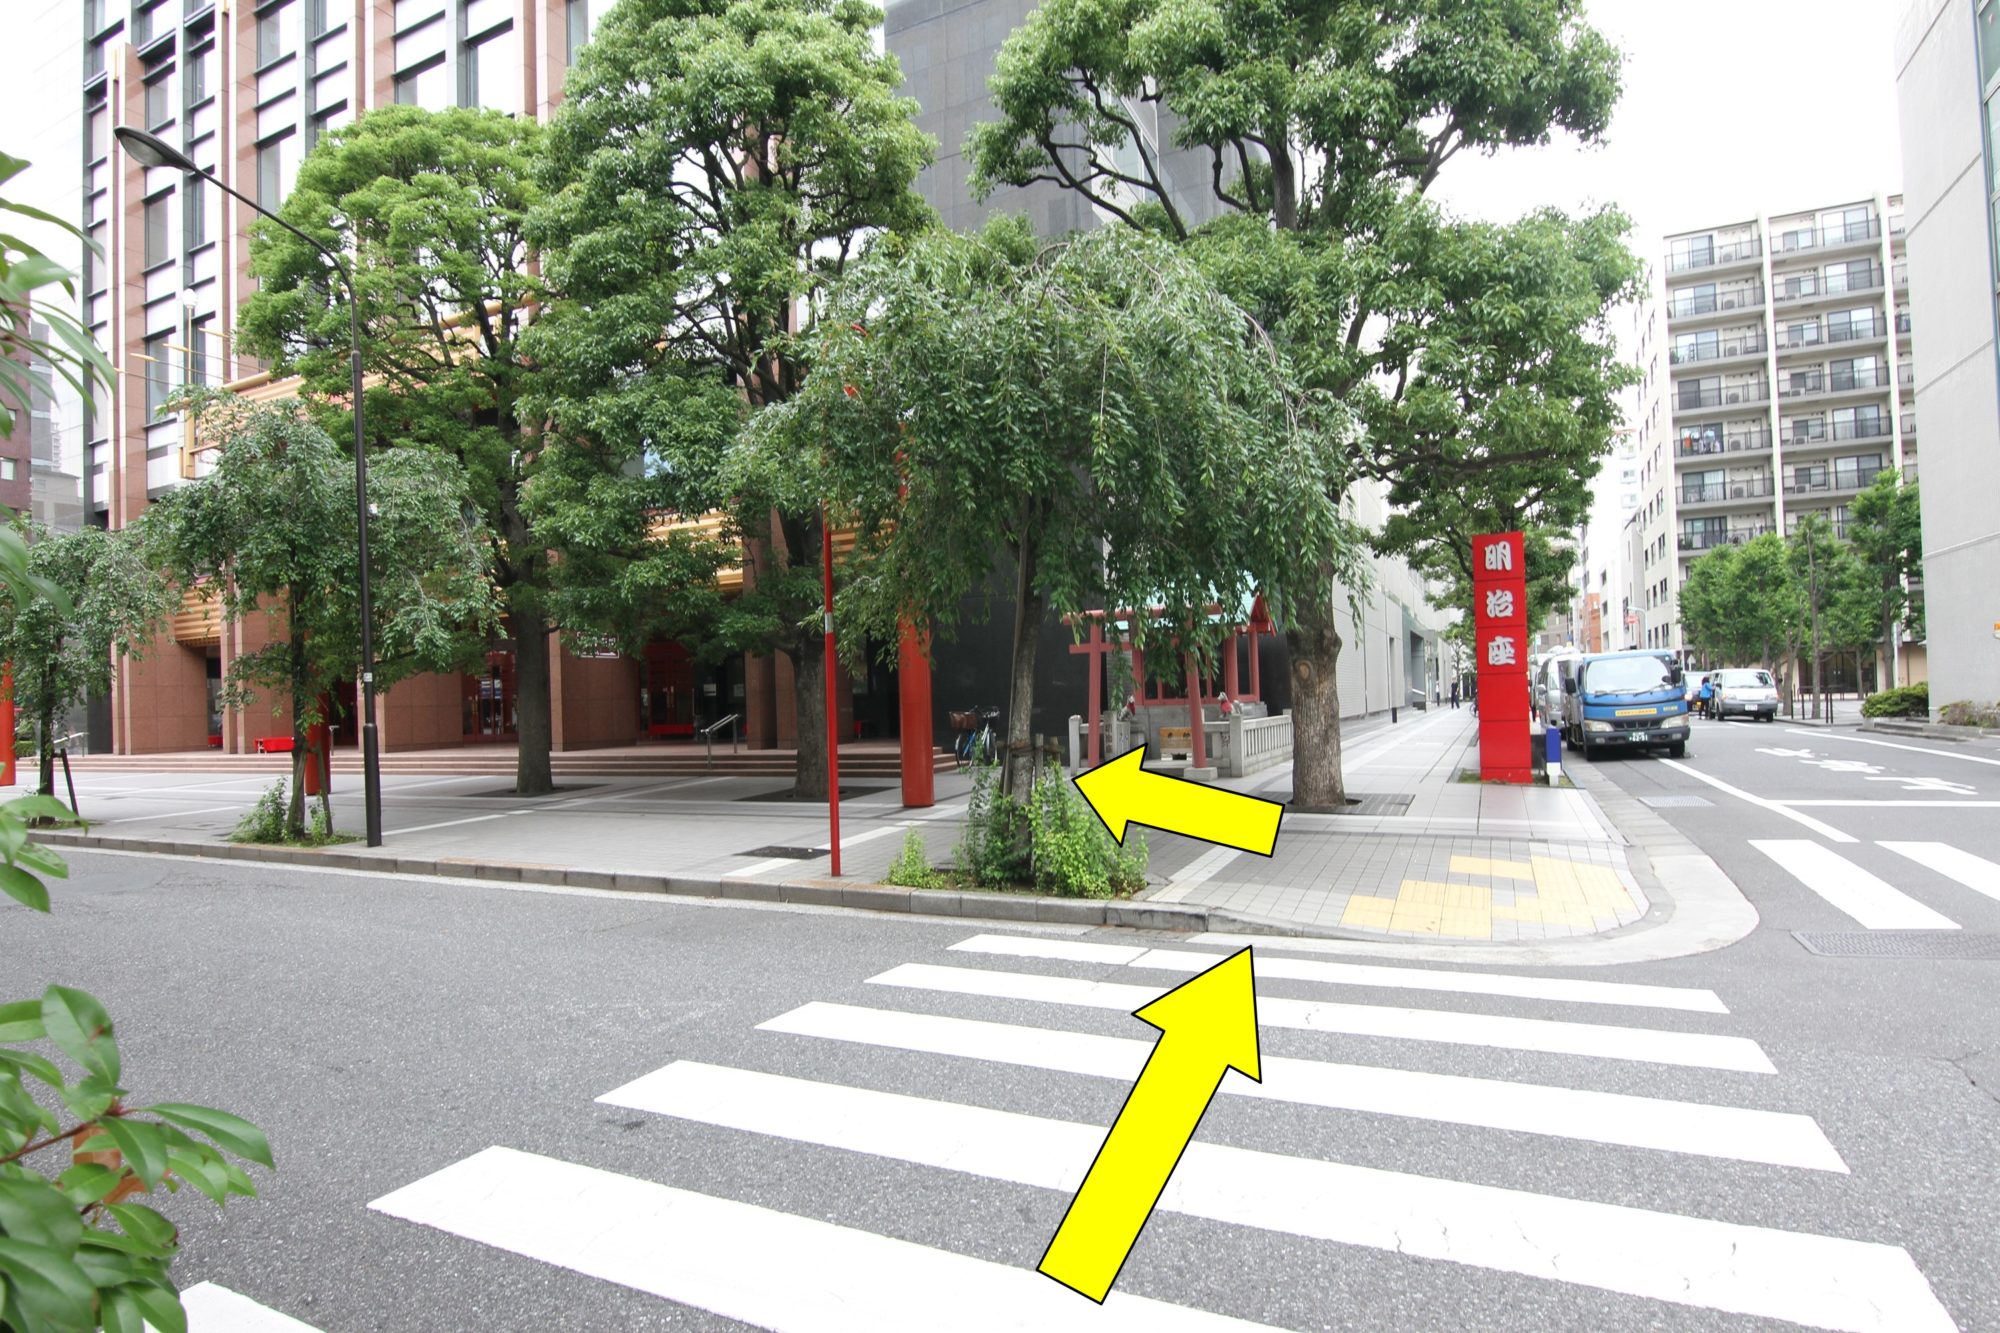 「明治座」の赤い柱のある方へ更に横断歩道を渡り、今度は左に曲がります